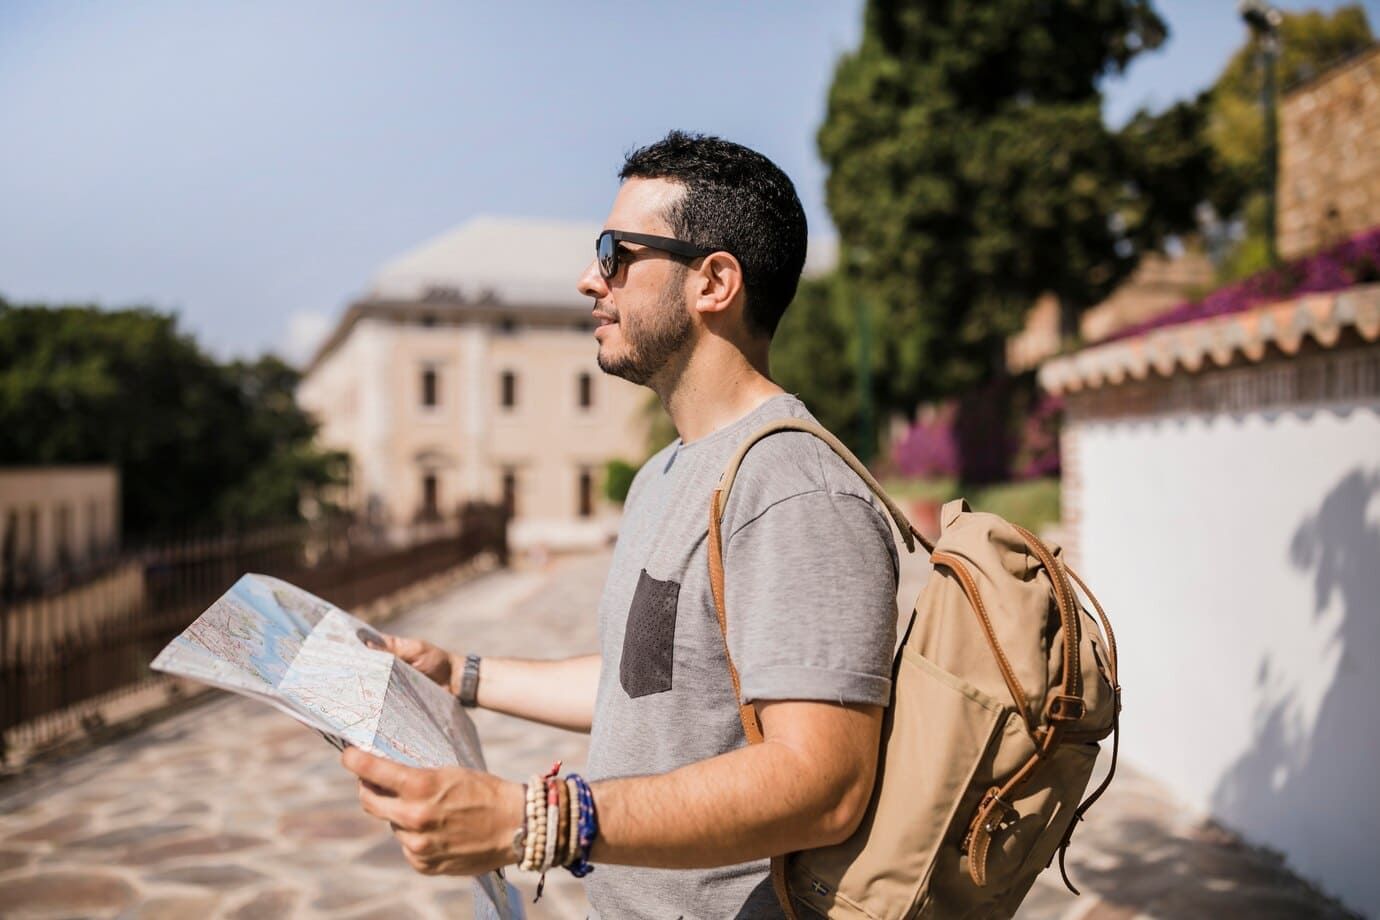 Guia de Turismo, homem, branco, com óculos de sol, de lado para a imagem, com camiseta cinza e mochila bege segurando um mapa.